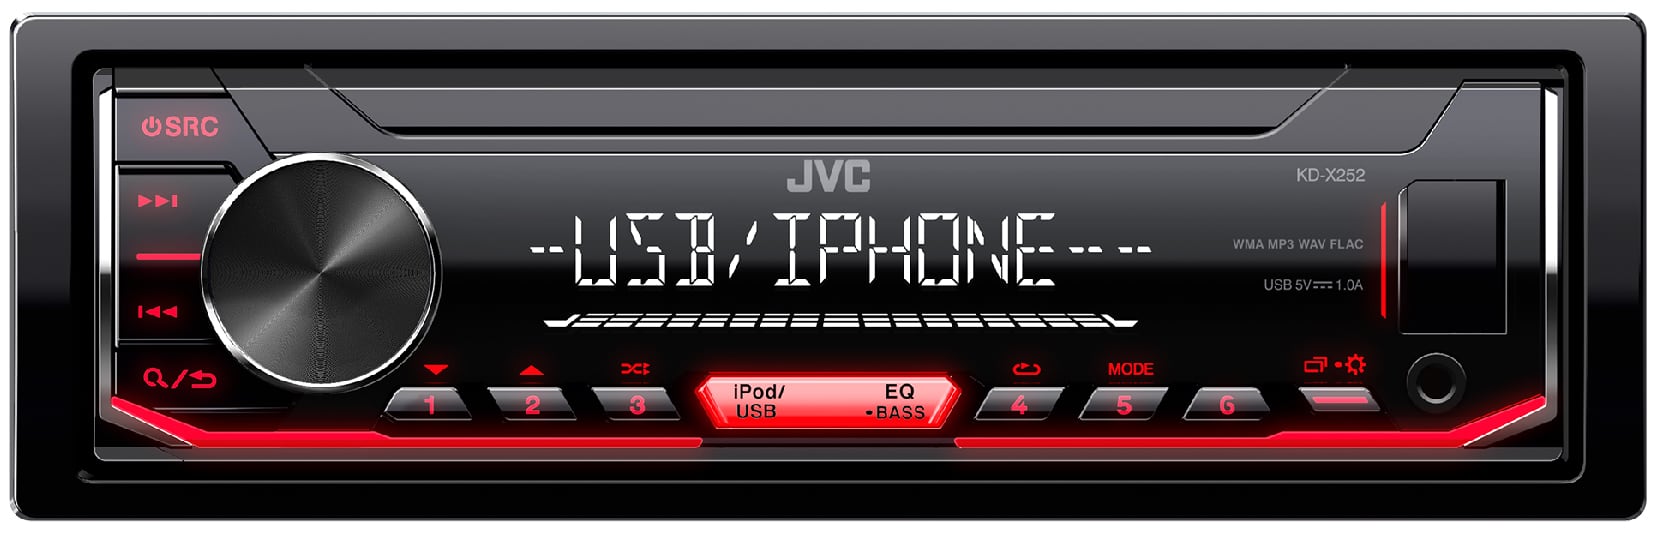 Autoradio JVC KD-X252 pas cher